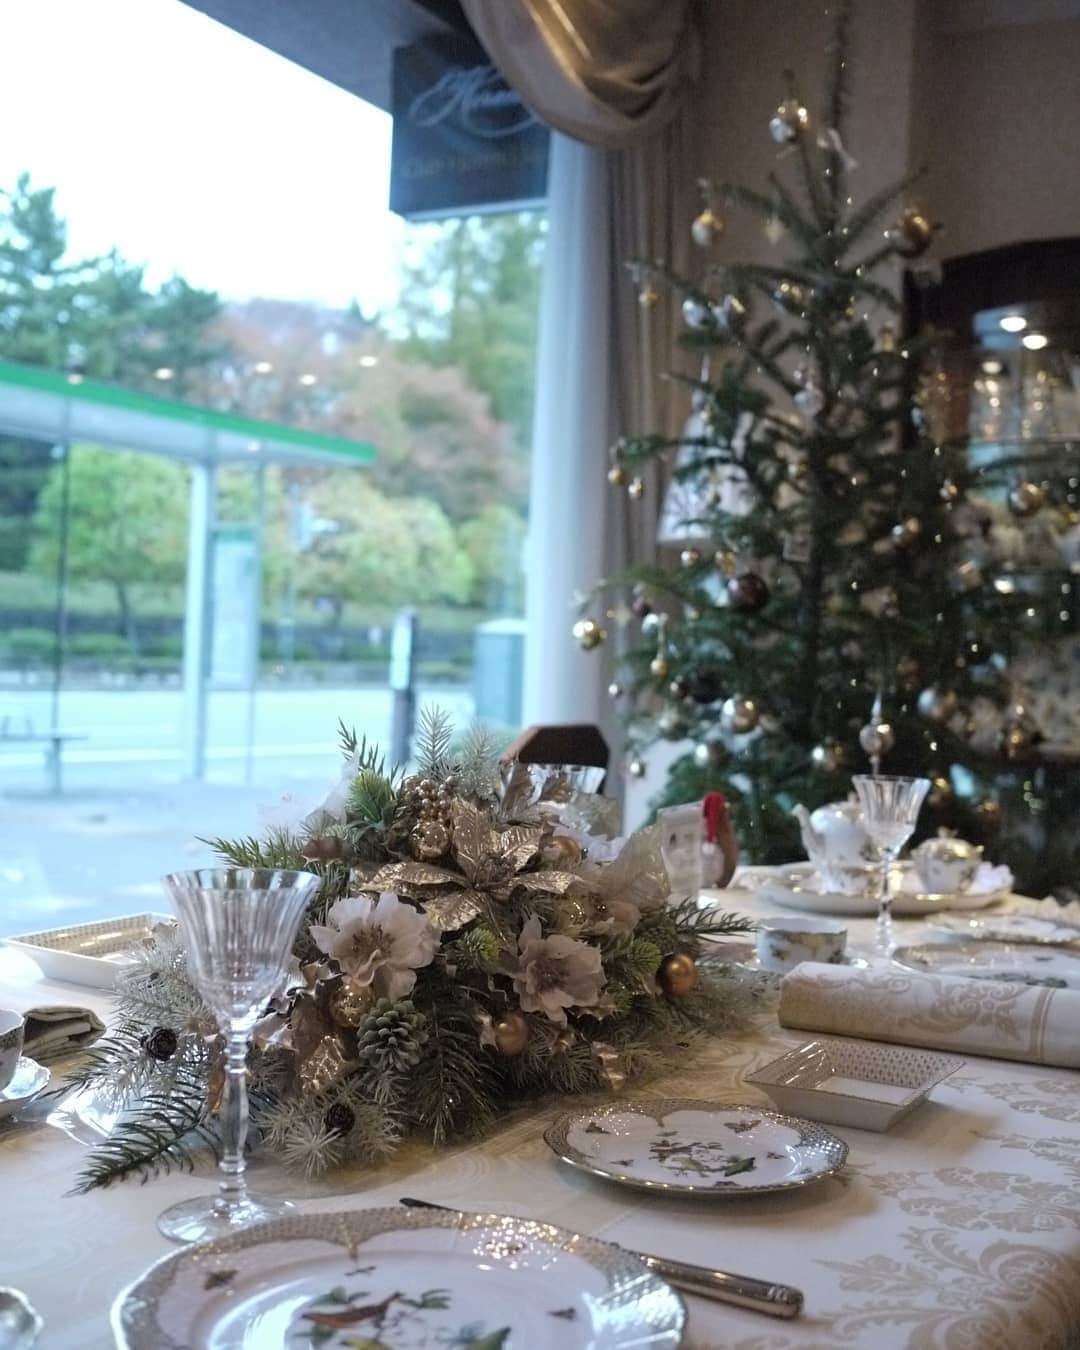 HEREND JAPANのインスタグラム：「クラブ ヘレンド ジャパン本店 Information  ■　HEREND　×　クリスマスフラワーコーディネート（レ ザンジュ）　■ . . 只今、クラブ ヘレンド ジャパン本店では、クリスマスのディスプレイで皆様をお迎えしています。 今年のテーマは、新作『ロスチャイルド・バード・ゴールドスケール』にあわせて クリスマスツリーとメインテーブルもゴールドで彩っています。 また12月25日（金）までは、いつもフラワーアレンジメントを担当して頂いている 平澤一美さん主宰『レ ザンジュ』の皆様によるクリスマスの素敵なテーブルフラワー及びウィンドウディスプレイをご覧になれます。 ヘレンドとのコラボレーションを是非この機会にご堪能ください。 . .  #ヘレンド#herend#herendjapan#クラブヘレンドジャパン本店#レザンジュ#平澤一美#アーティフィシャルフラワー#クリスマス#ヘレンドクリスマス#xmas #christmas #テーブルコーディネート#フラワーアレ ンジメント#ガルニエティエボー#hungary #ハンガリー」